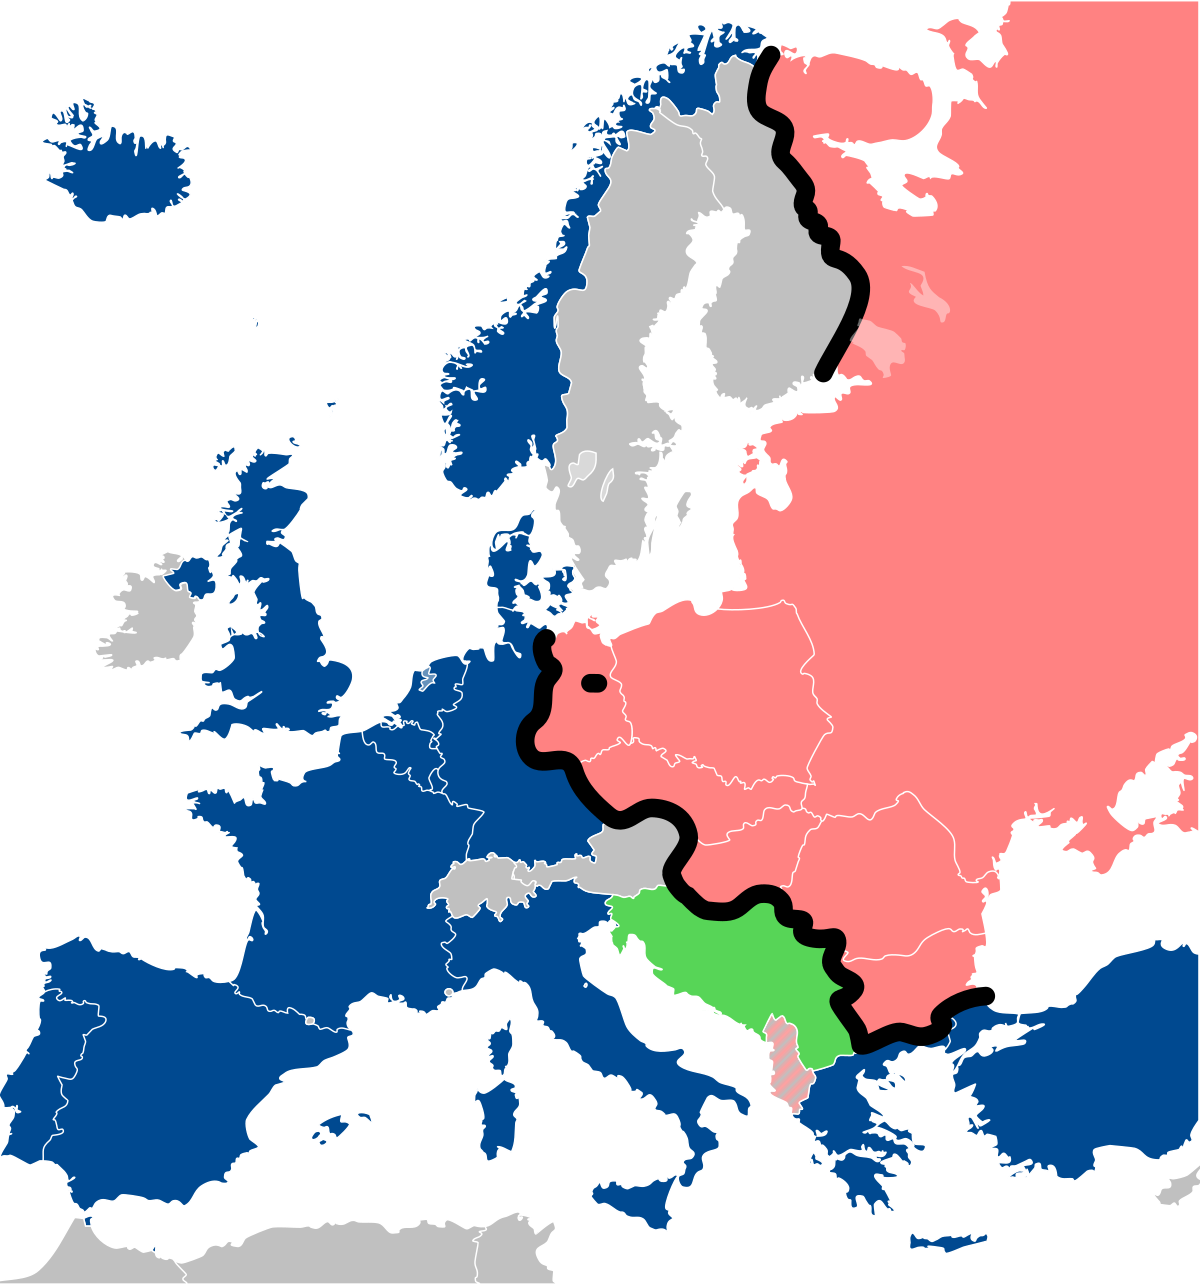 Blocco orientale - Wikipedia